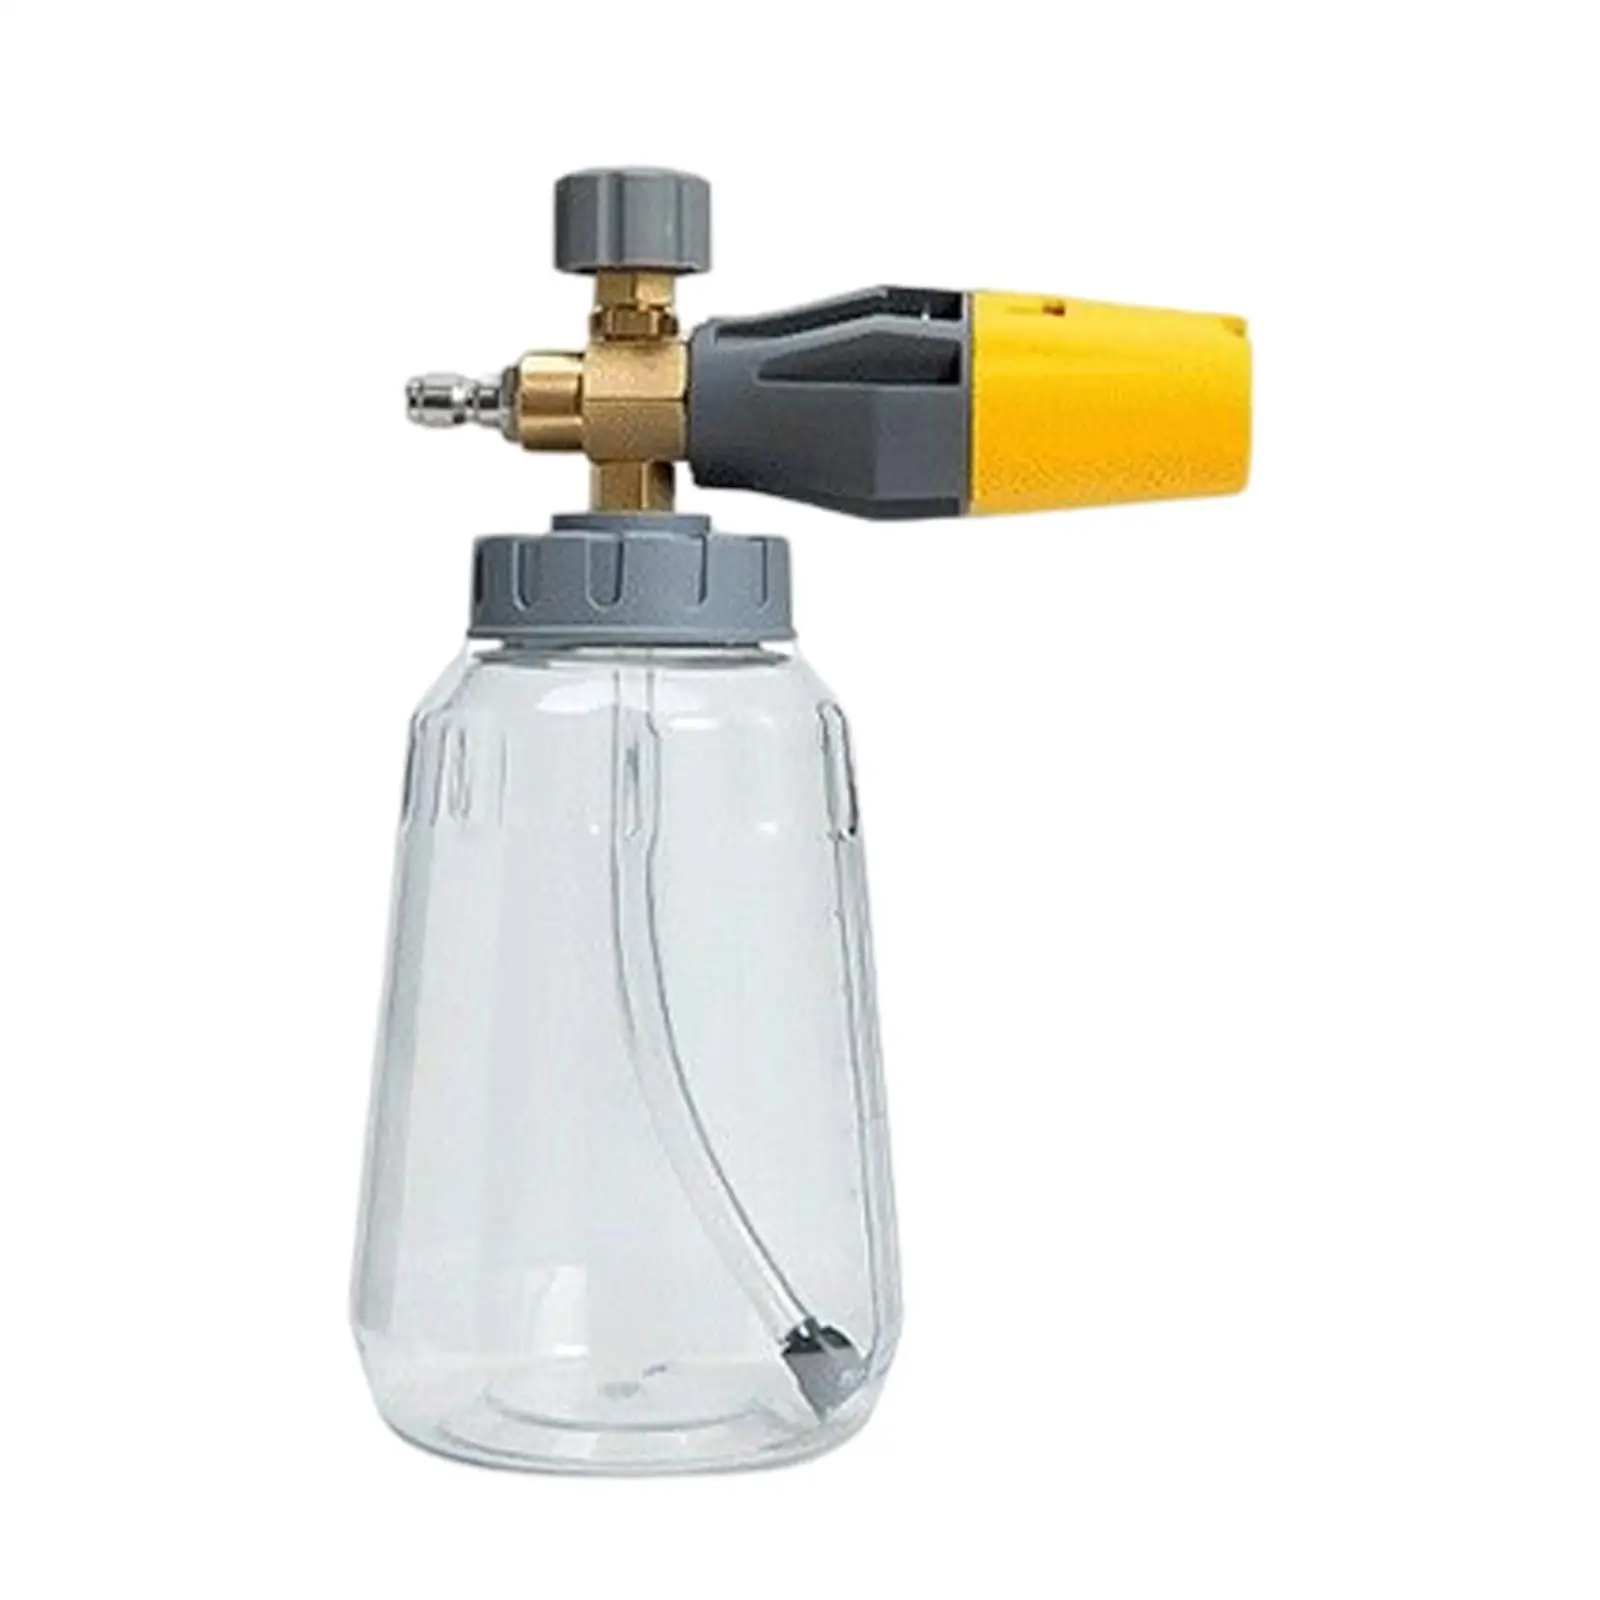 Portable Foaming Sprayer High Pressure Foam Sprayer 1L Foam Watering Can Car Wash Sprayer for Windows Washing Car Cleaning